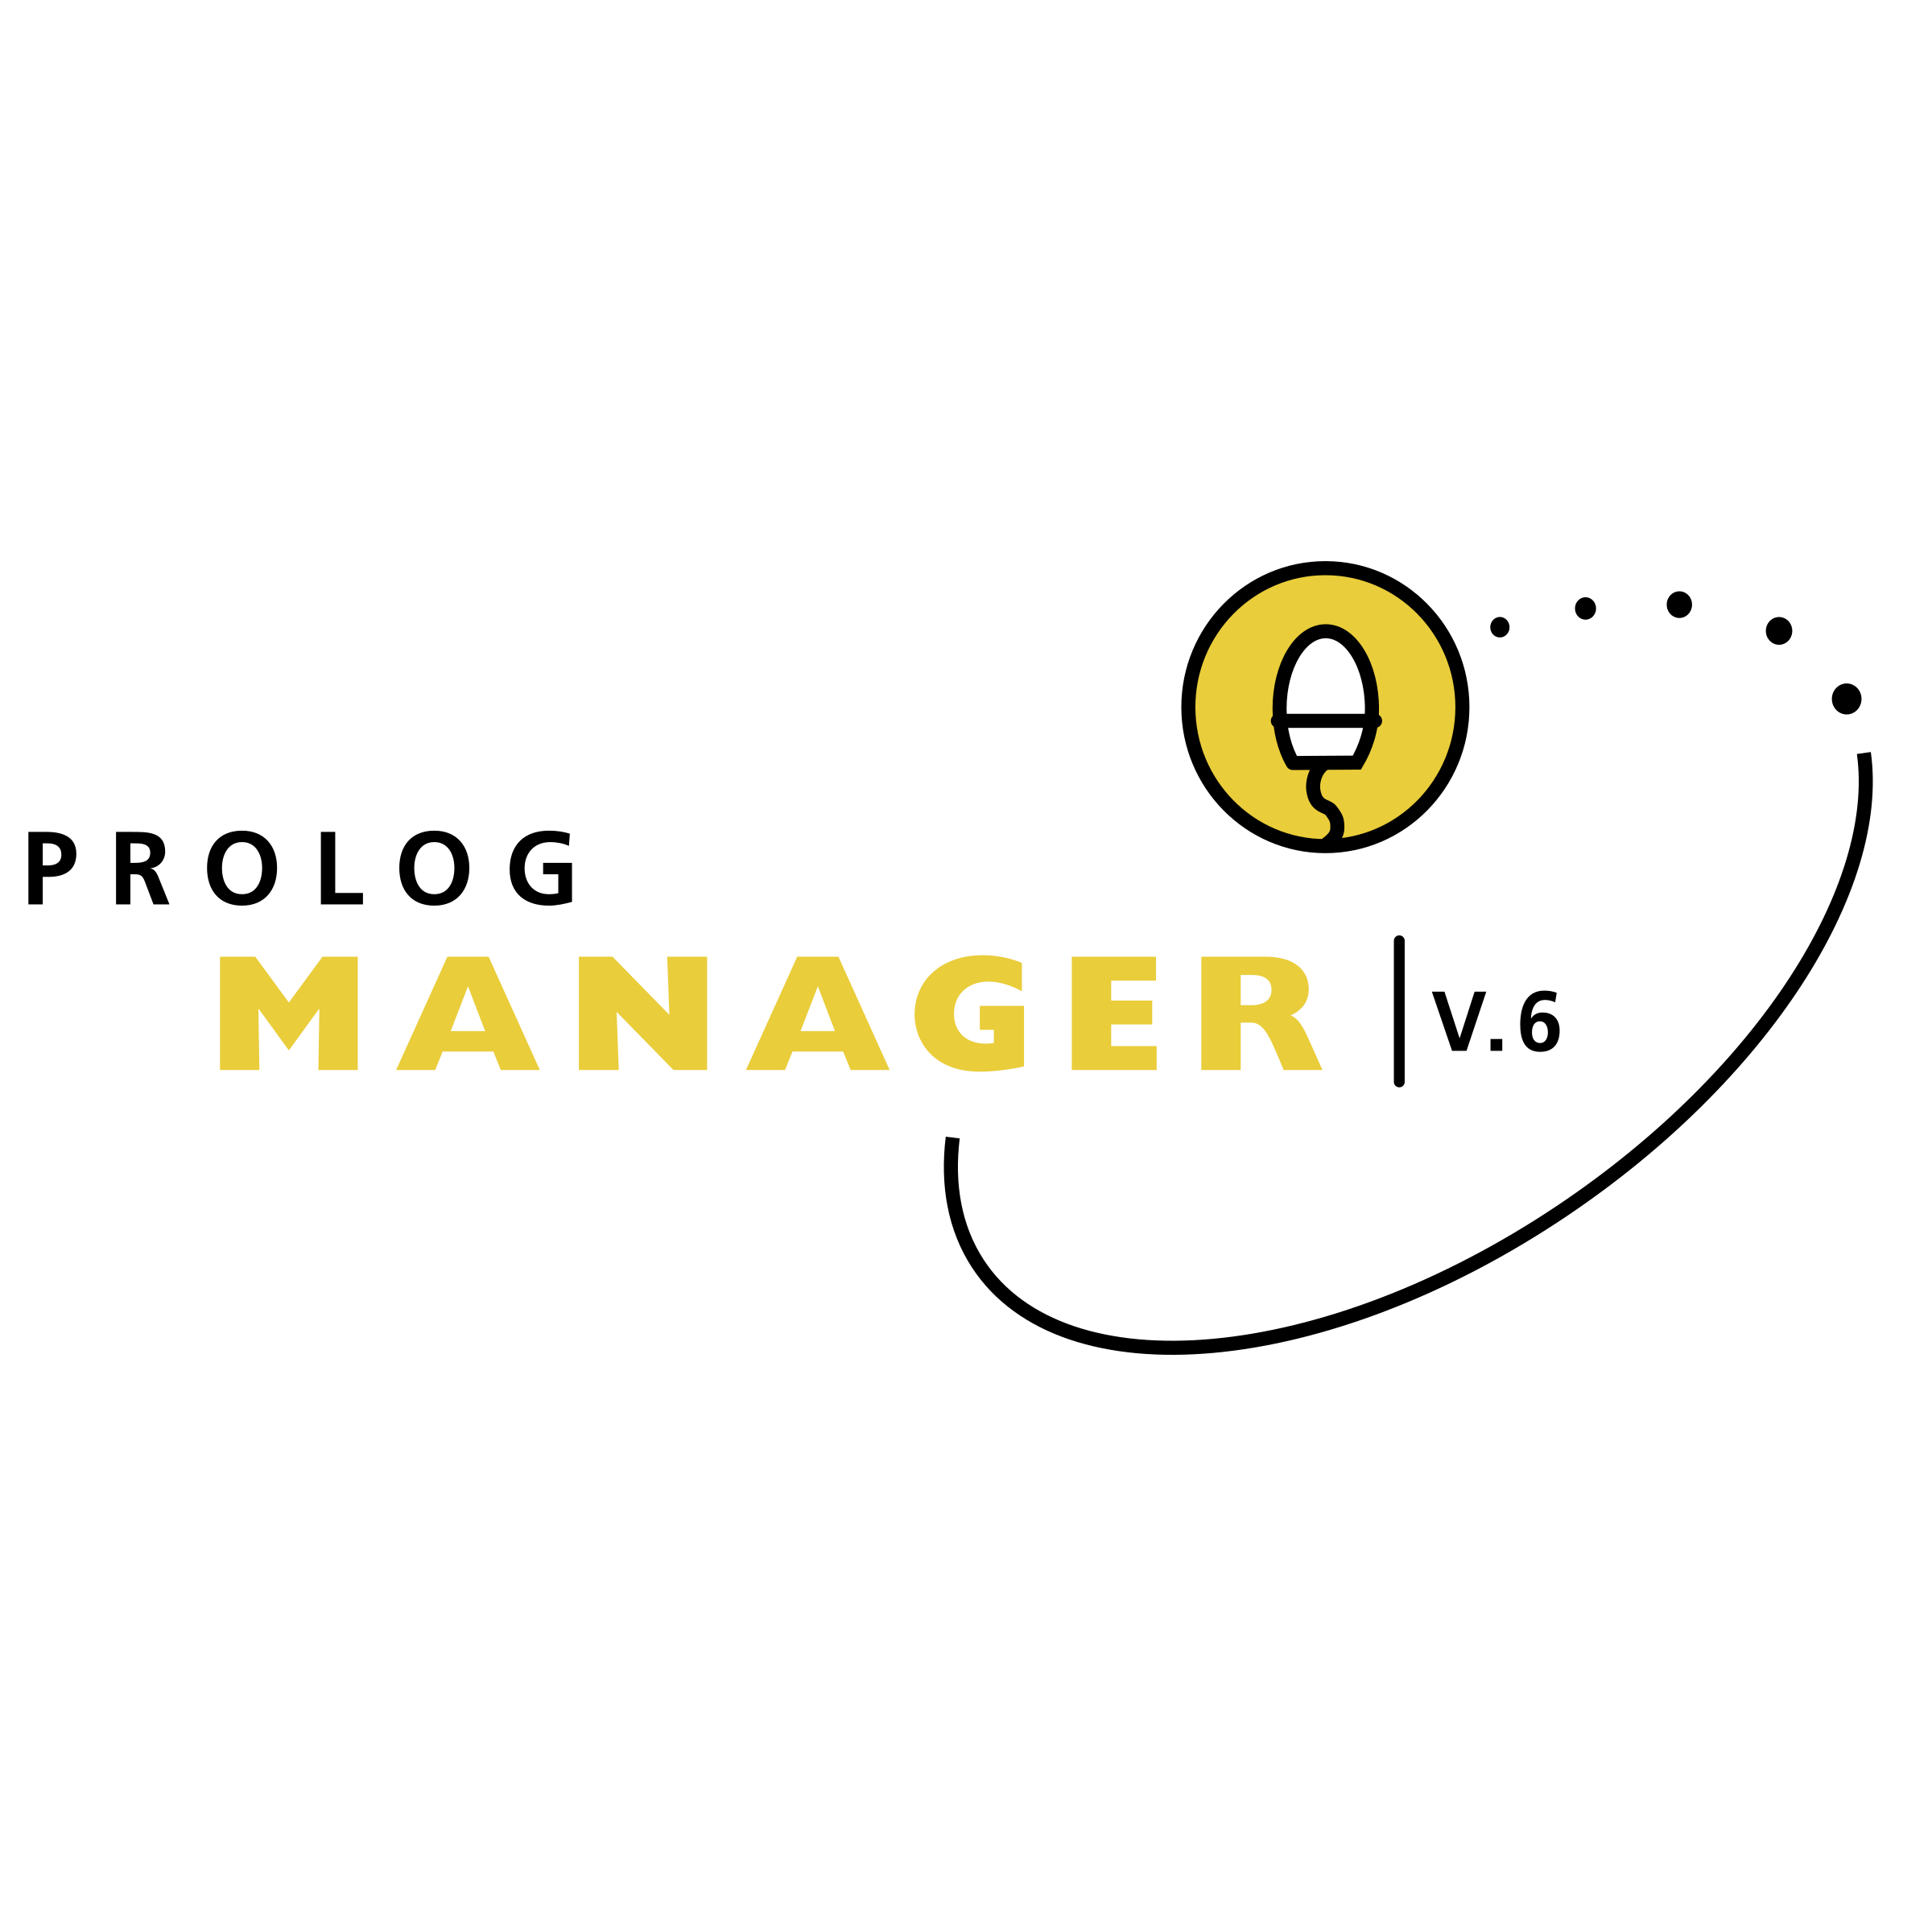 Prolog Logo - Prolog Manager Logo PNG Transparent & SVG Vector